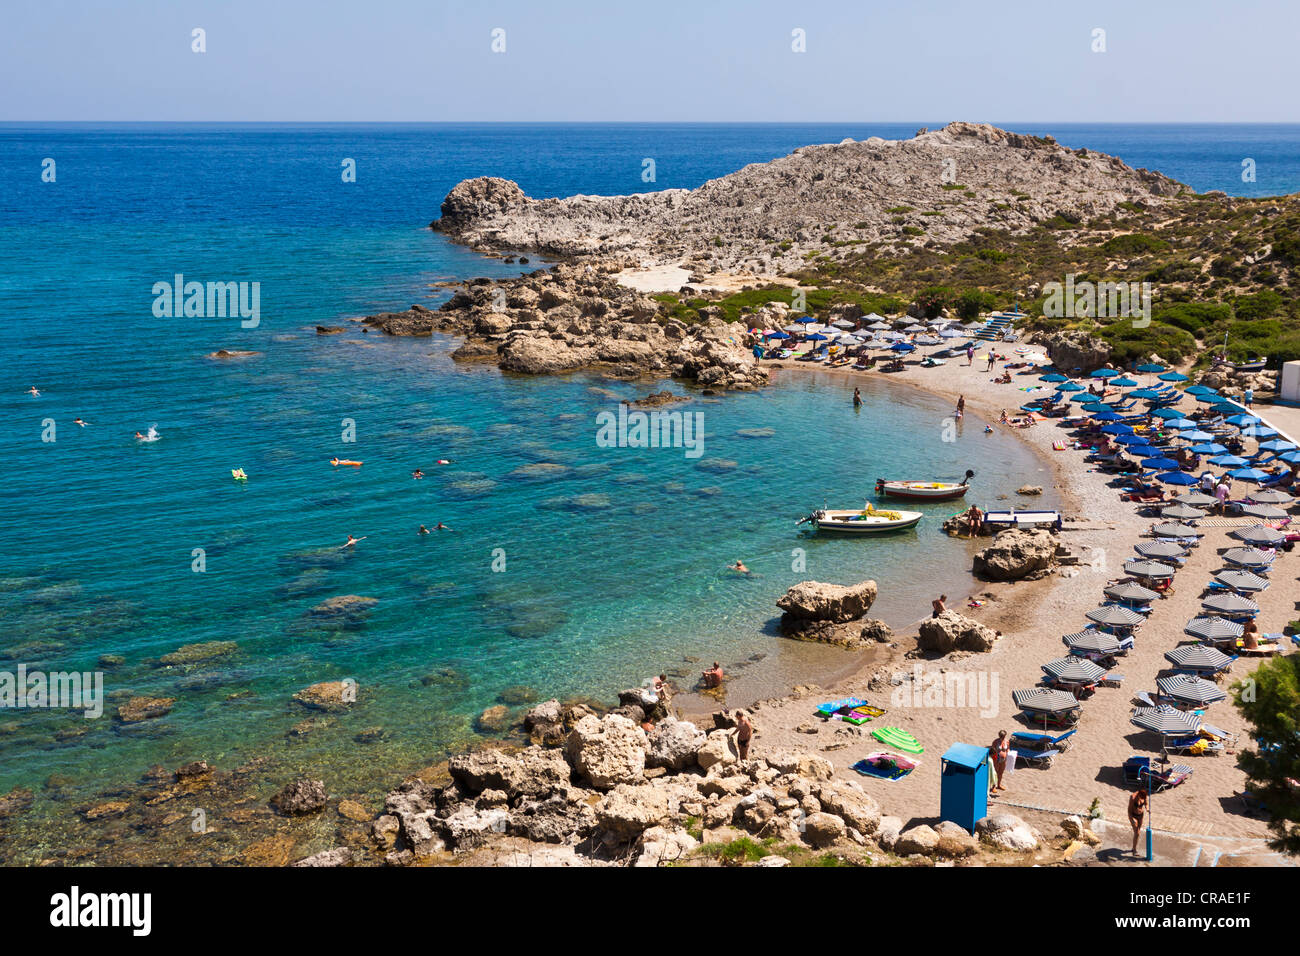 Anthony Quinn Bay, close to Faliraki, Rhodes, Greece, Europe Stock Photo